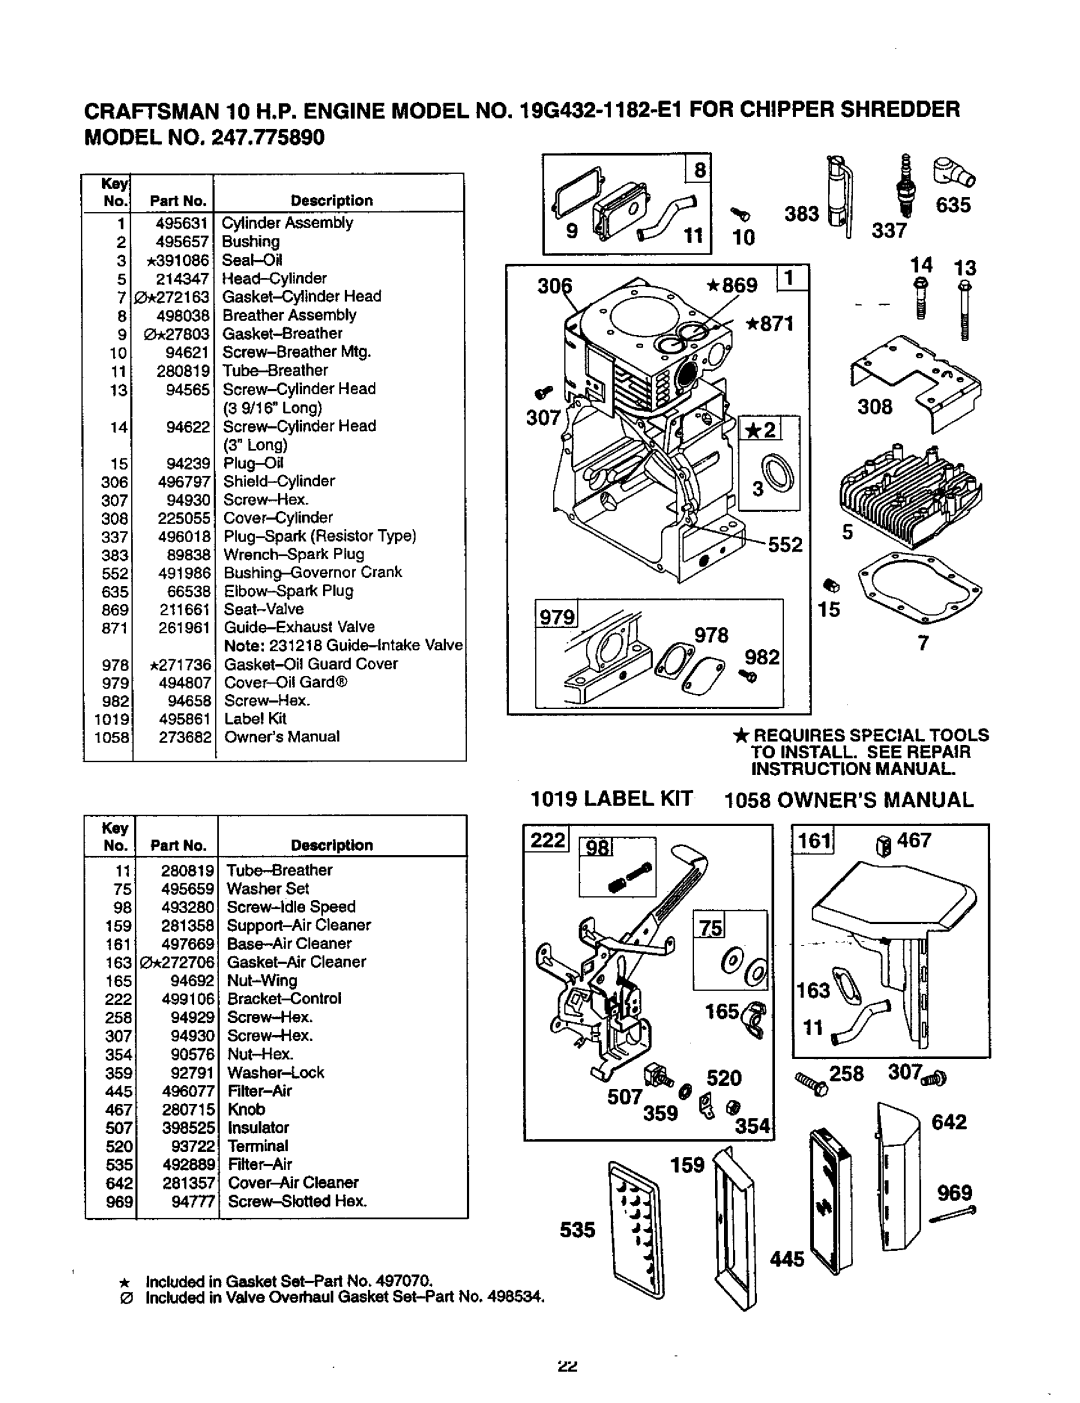 Craftsman 247.775890 manual FOR CHIPPER SHREDDER 8 